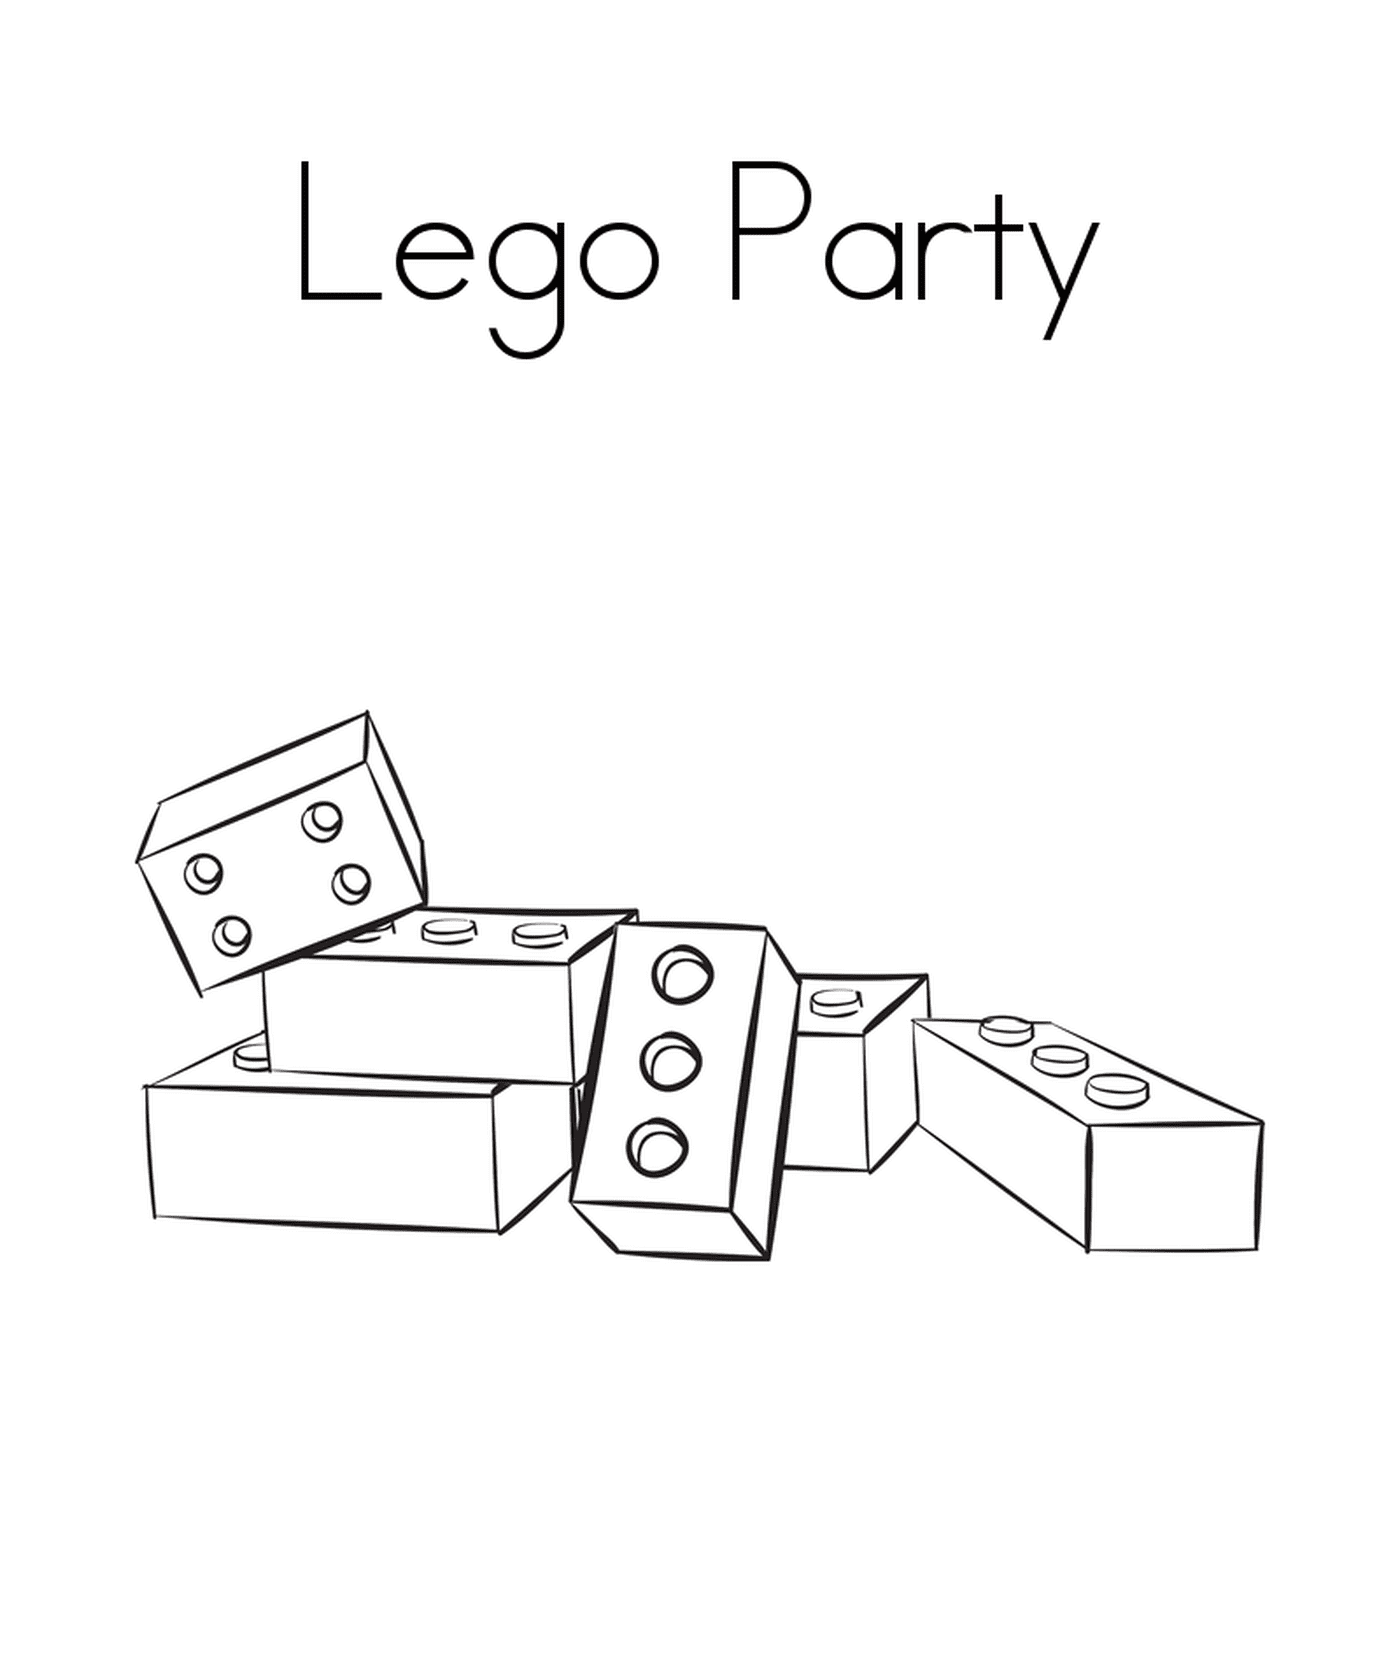   Blocs Lego alignés les uns à côté des autres 